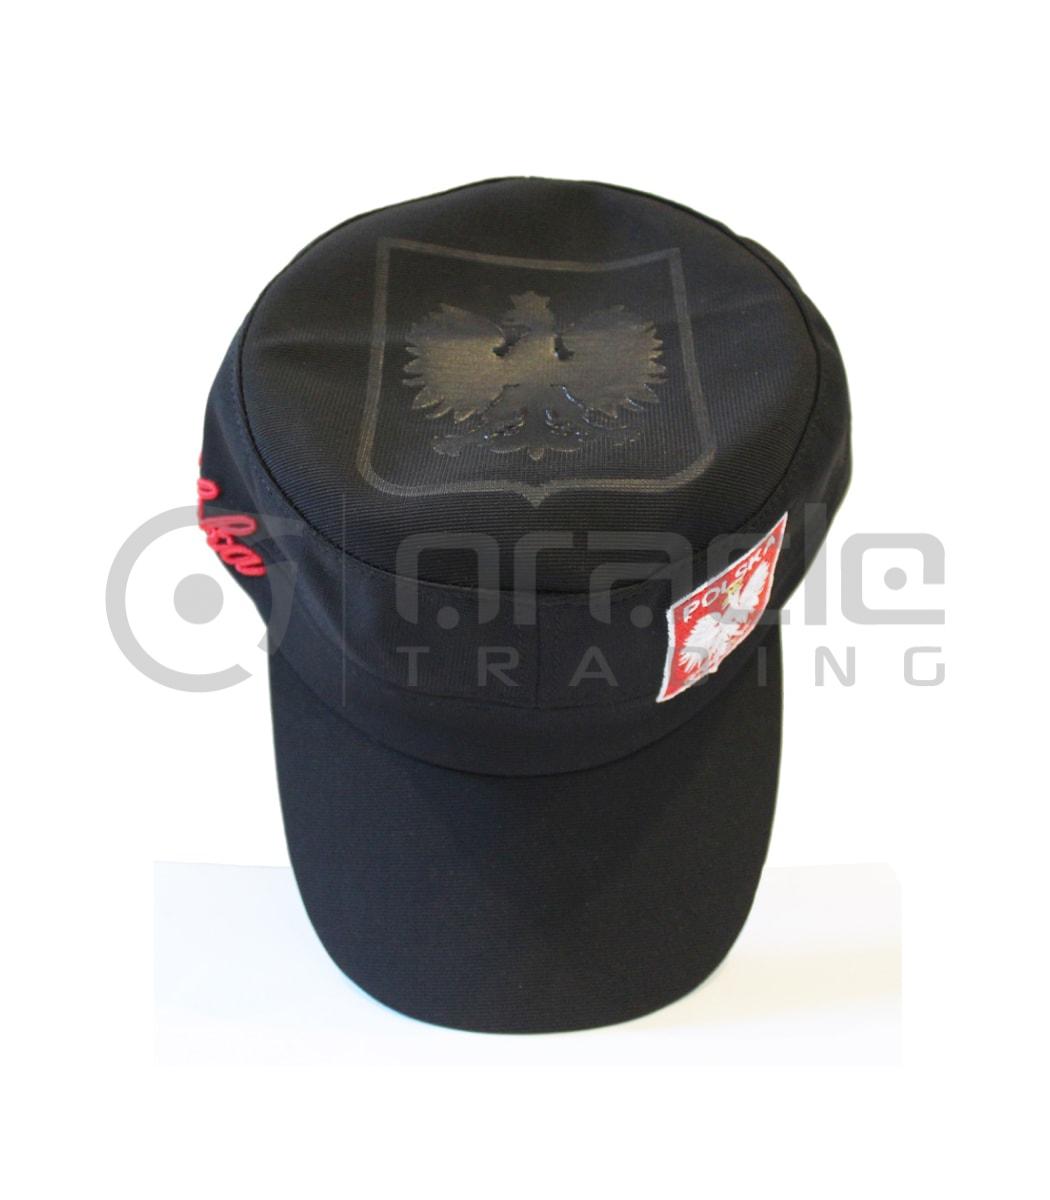 poland flex fit army hat black pol004 b